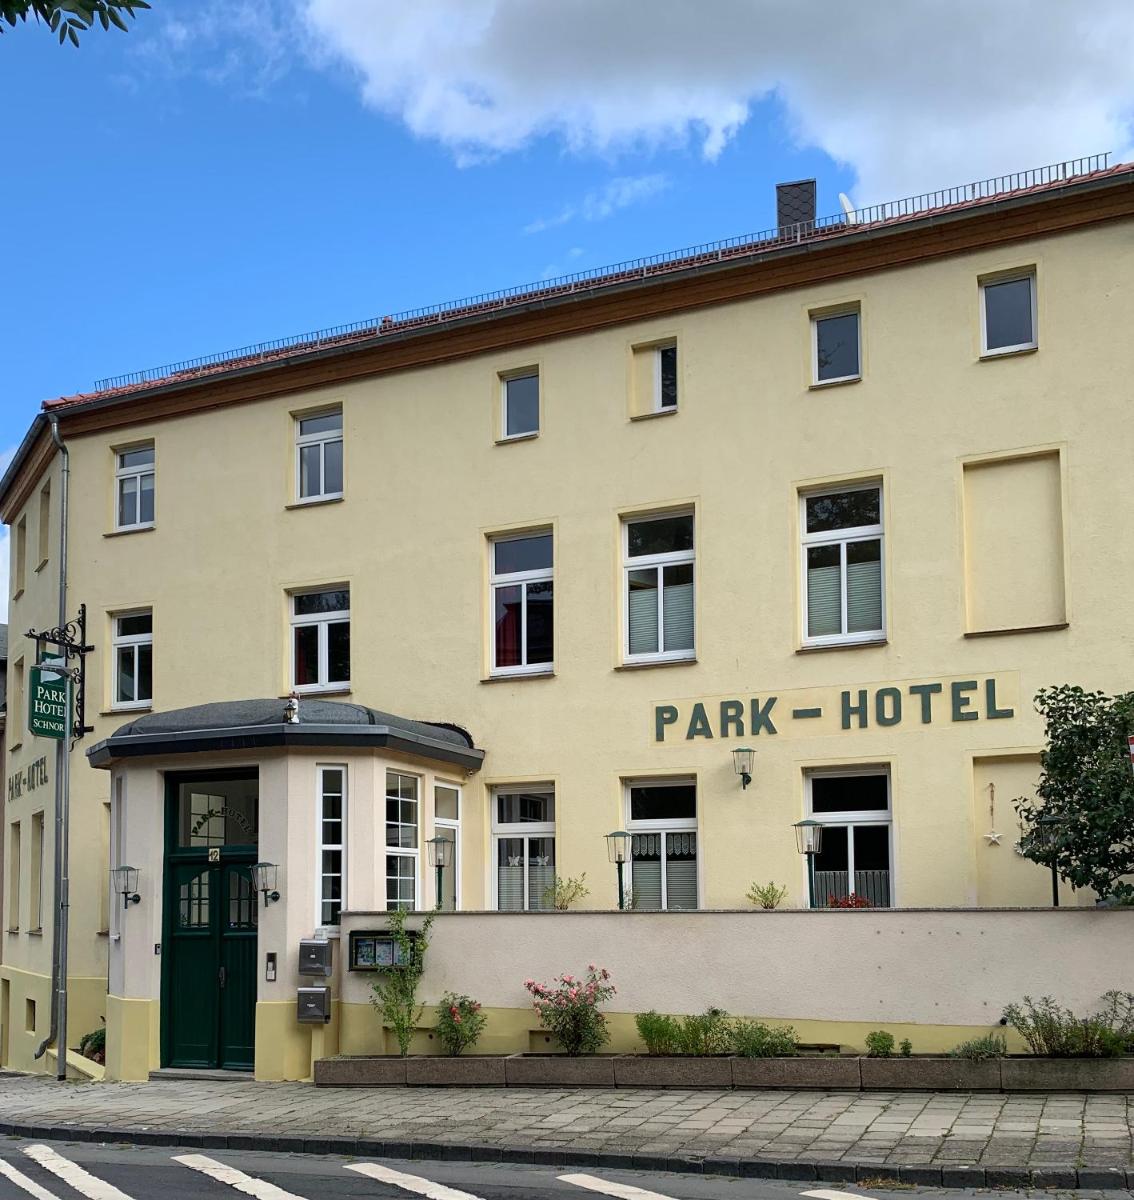 Parkhotel Schnorr - Housity